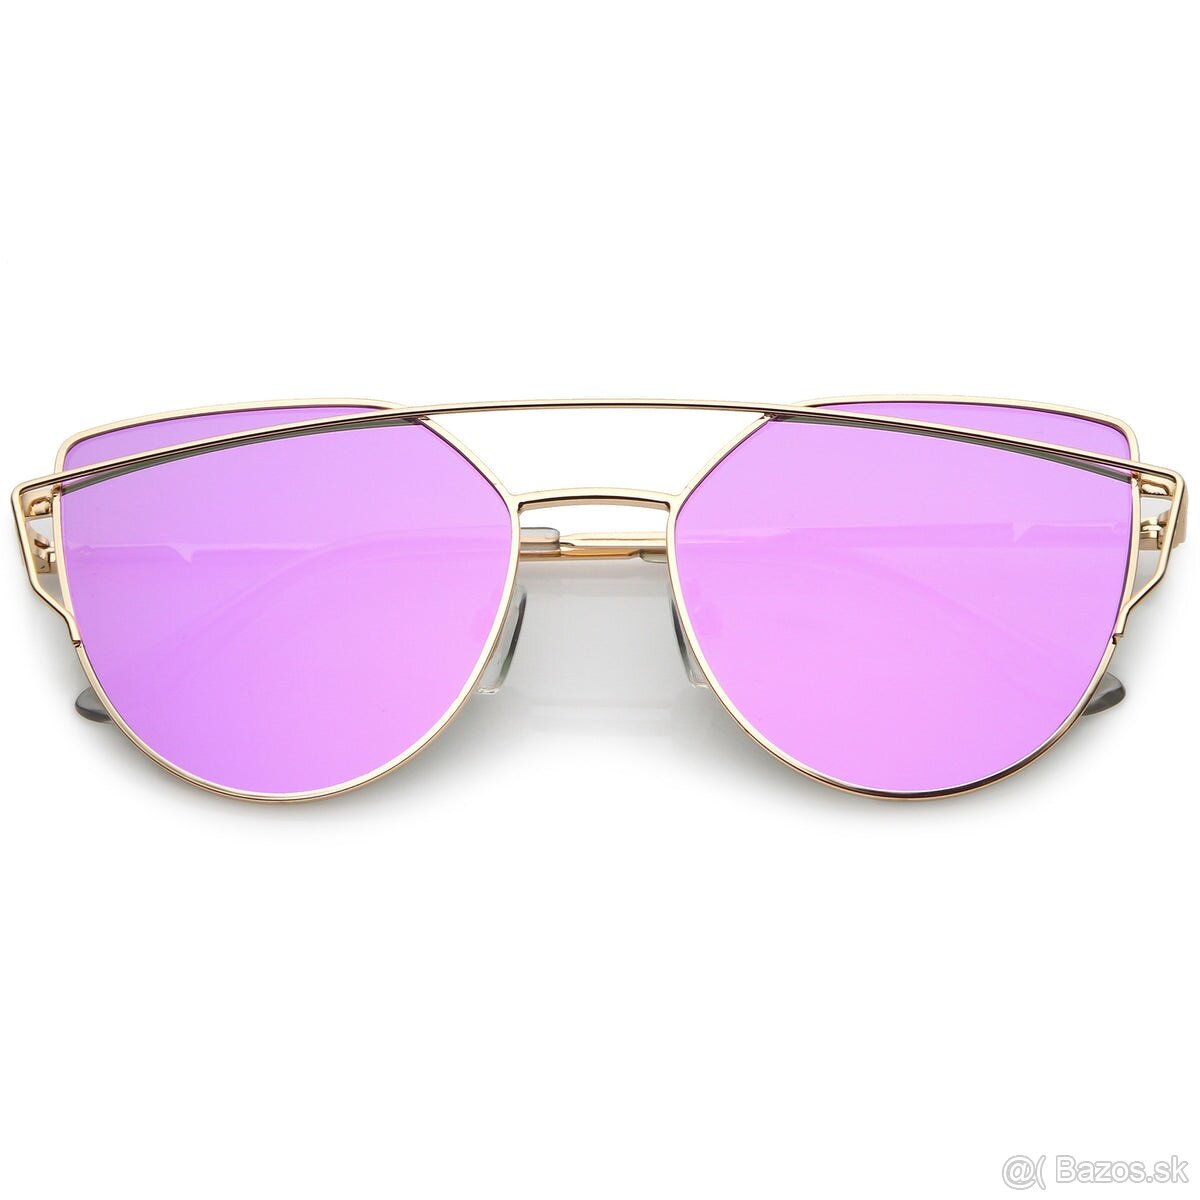 Zrkadlové slnečné okuliare fialove